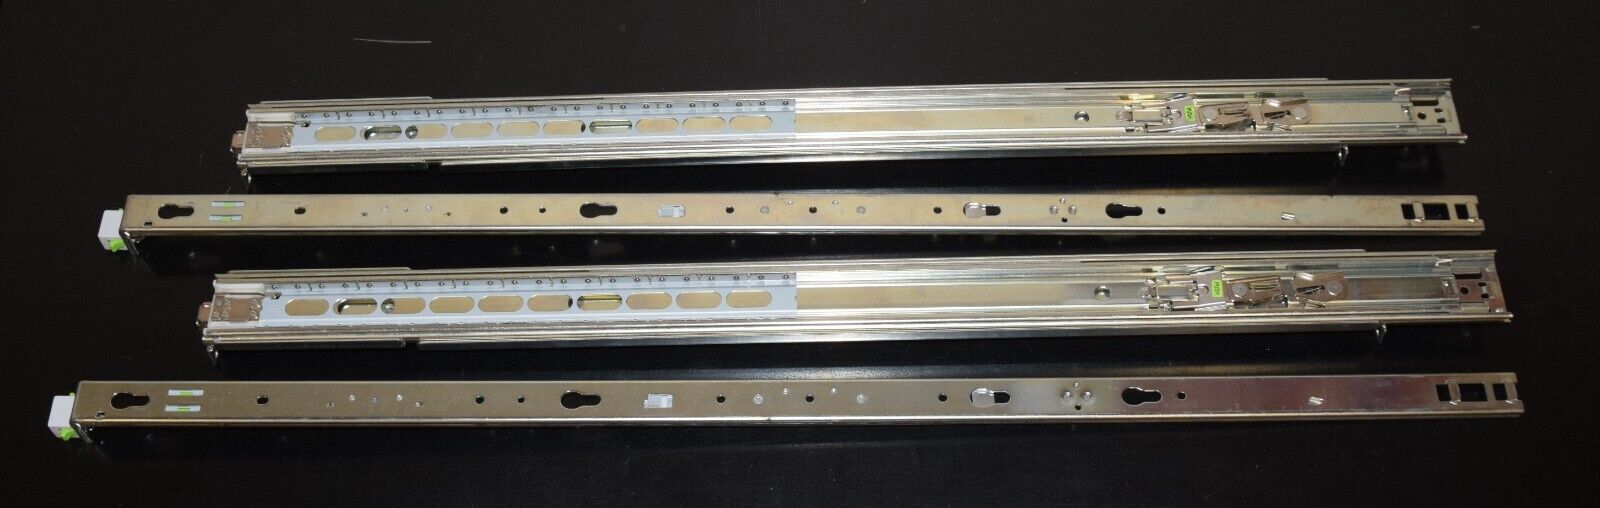 Inner/Outer Rack Mount Sliding Rail Kit for Sun Microsystems SunFire X4140 X4150